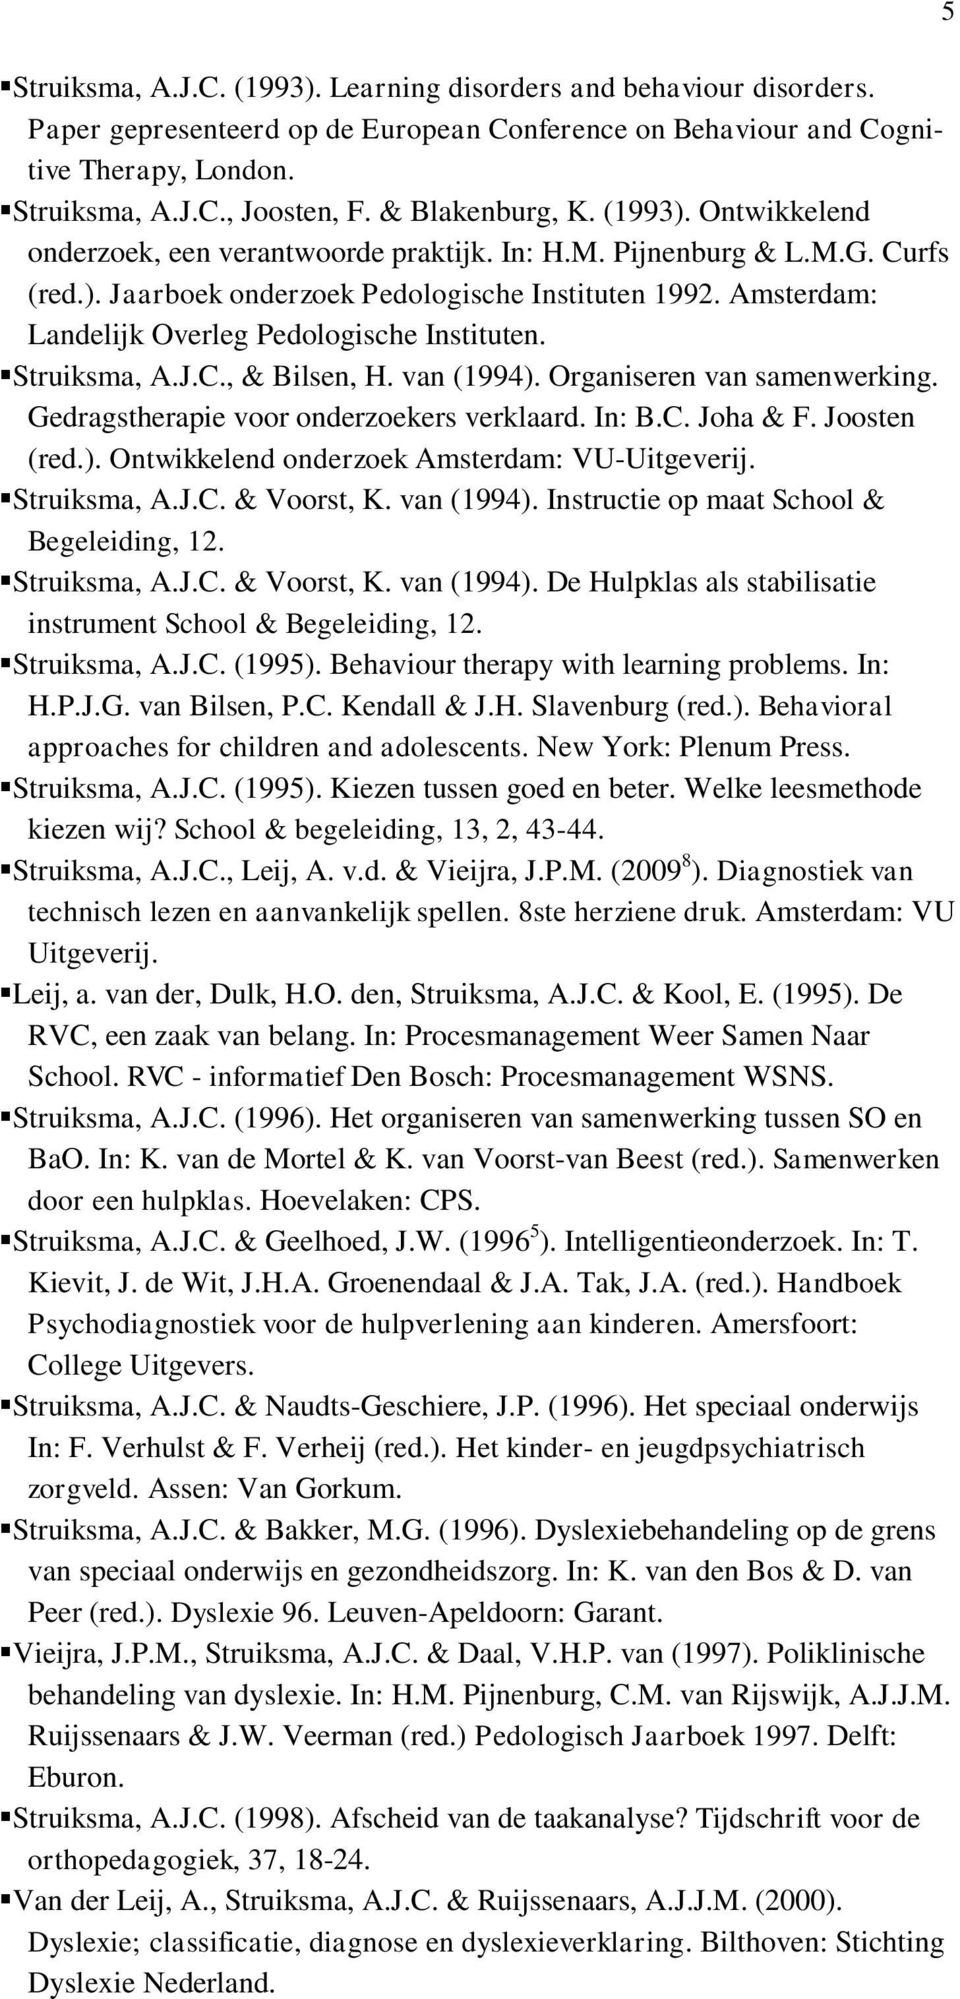 Amsterdam: Landelijk Overleg Pedologische Instituten. Struiksma, A.J.C., & Bilsen, H. van (1994). Organiseren van samenwerking. Gedragstherapie voor onderzoekers verklaard. In: B.C. Joha & F.